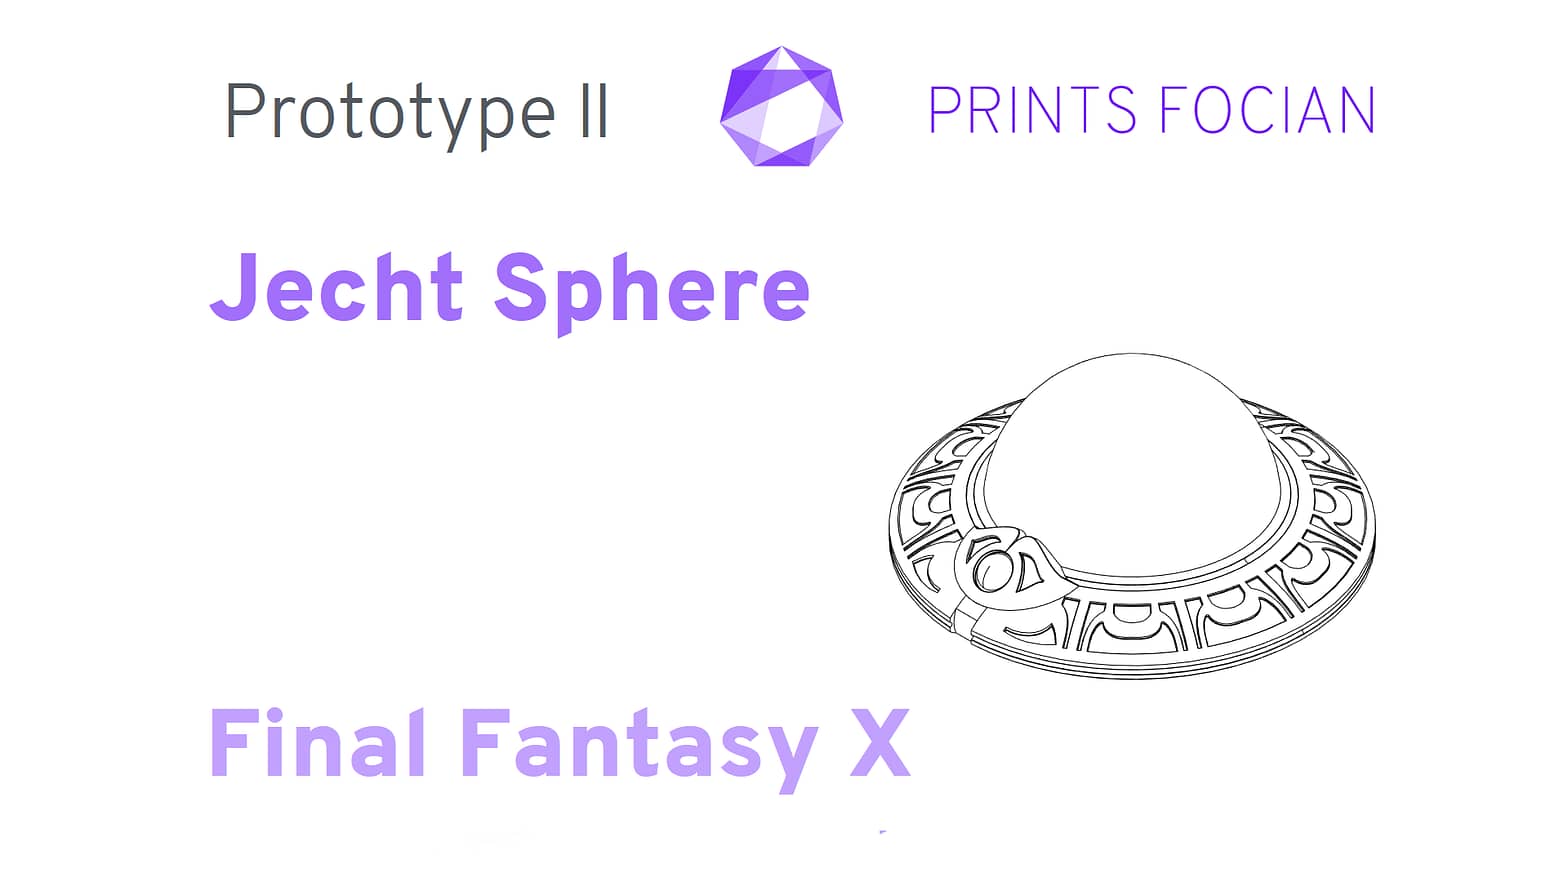 Prints Focian Jecht Sphere Final Fantasy X Prototype II